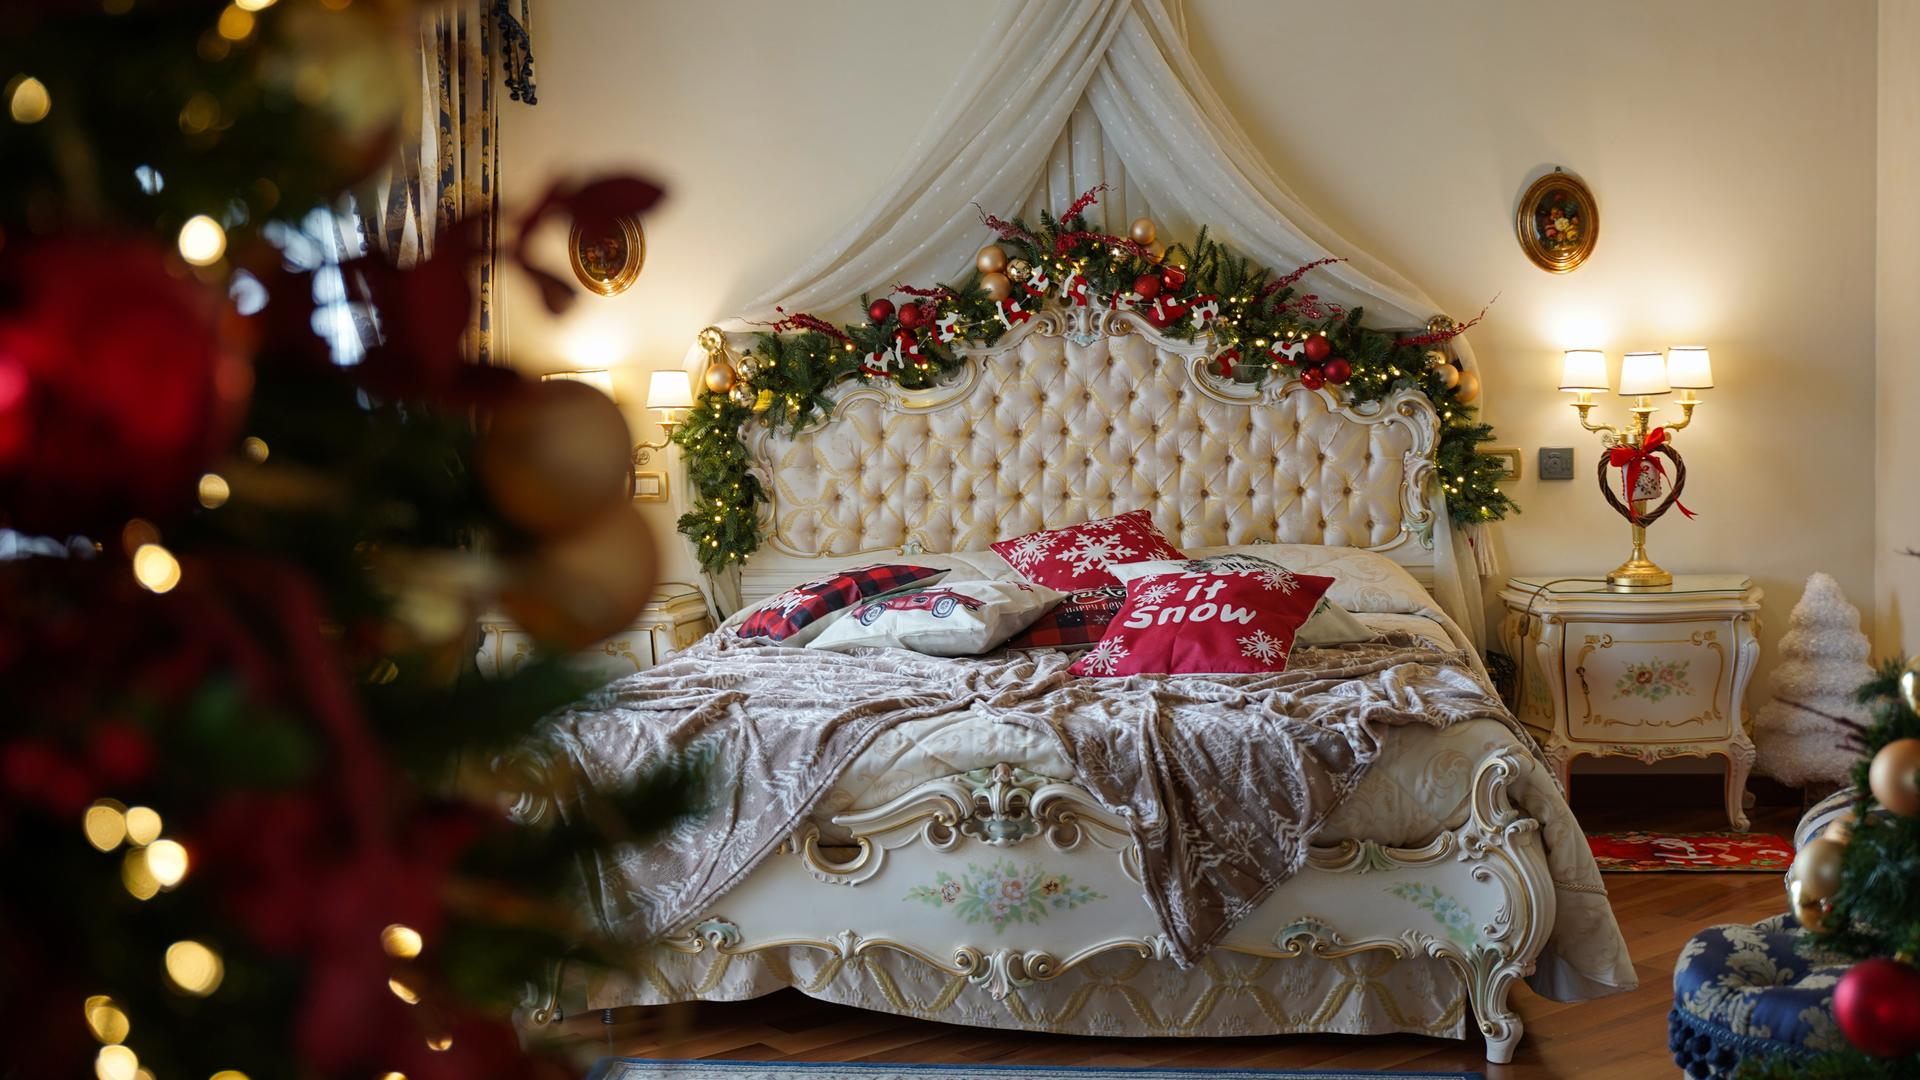 Ein barockes Bett ist mit festlicher Weihnachtsdekoration am Bettgestell geschmückt. Auf der Decke liegen Kissen mit Christmas-Beschriftungen.